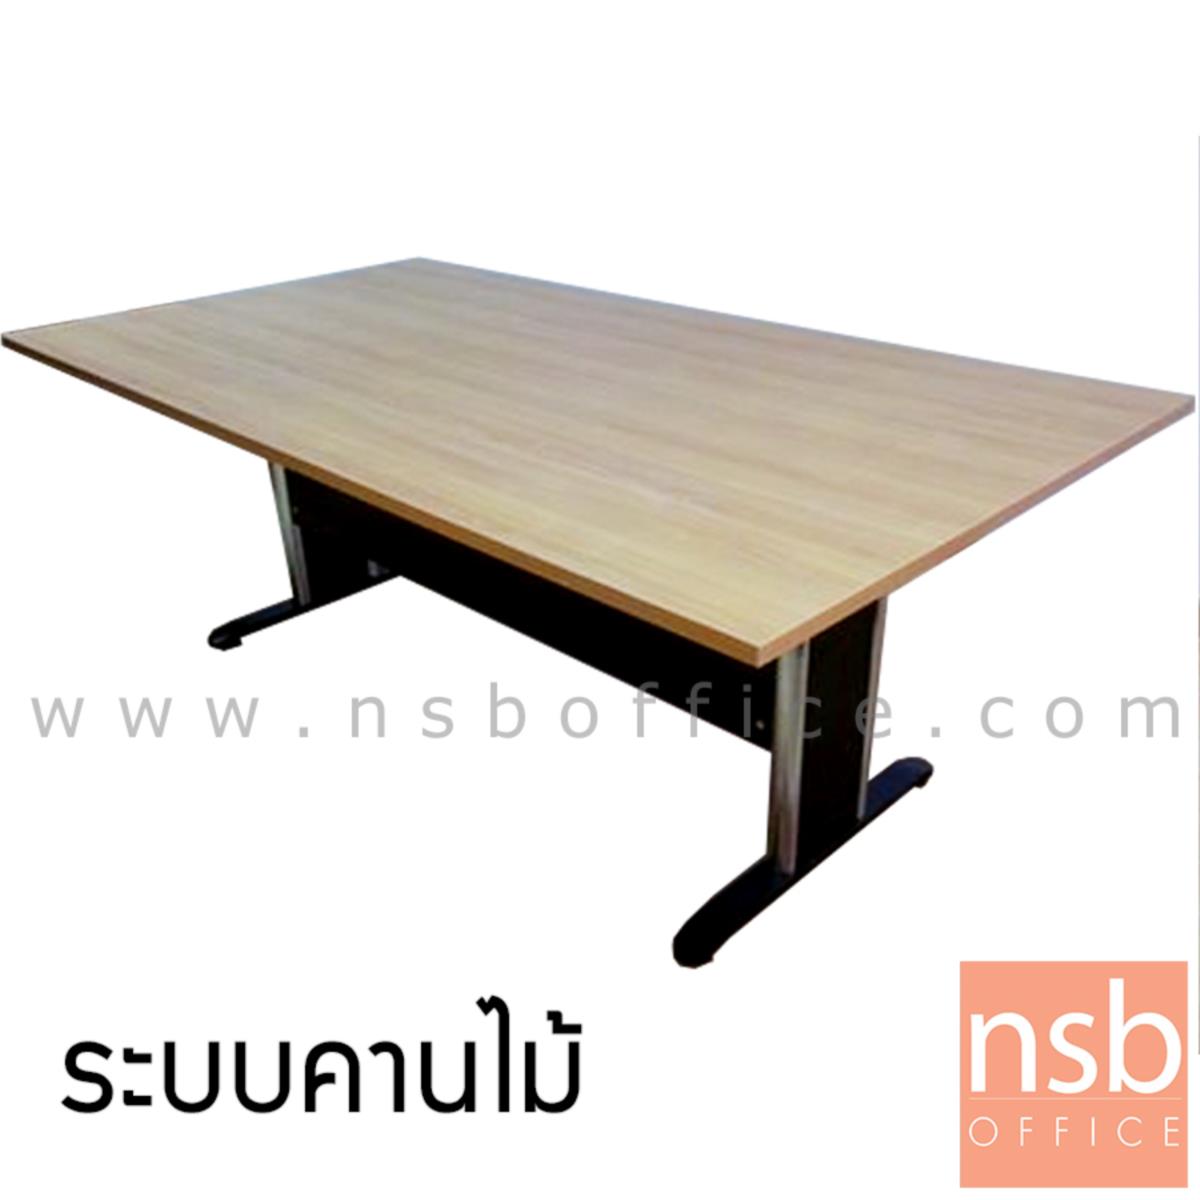 โต๊ะประชุมทรงสี่เหลี่ยม  ขนาด 180W, 200W, 240W cm. ระบบคานไม้ ขาเหล็กตัวที